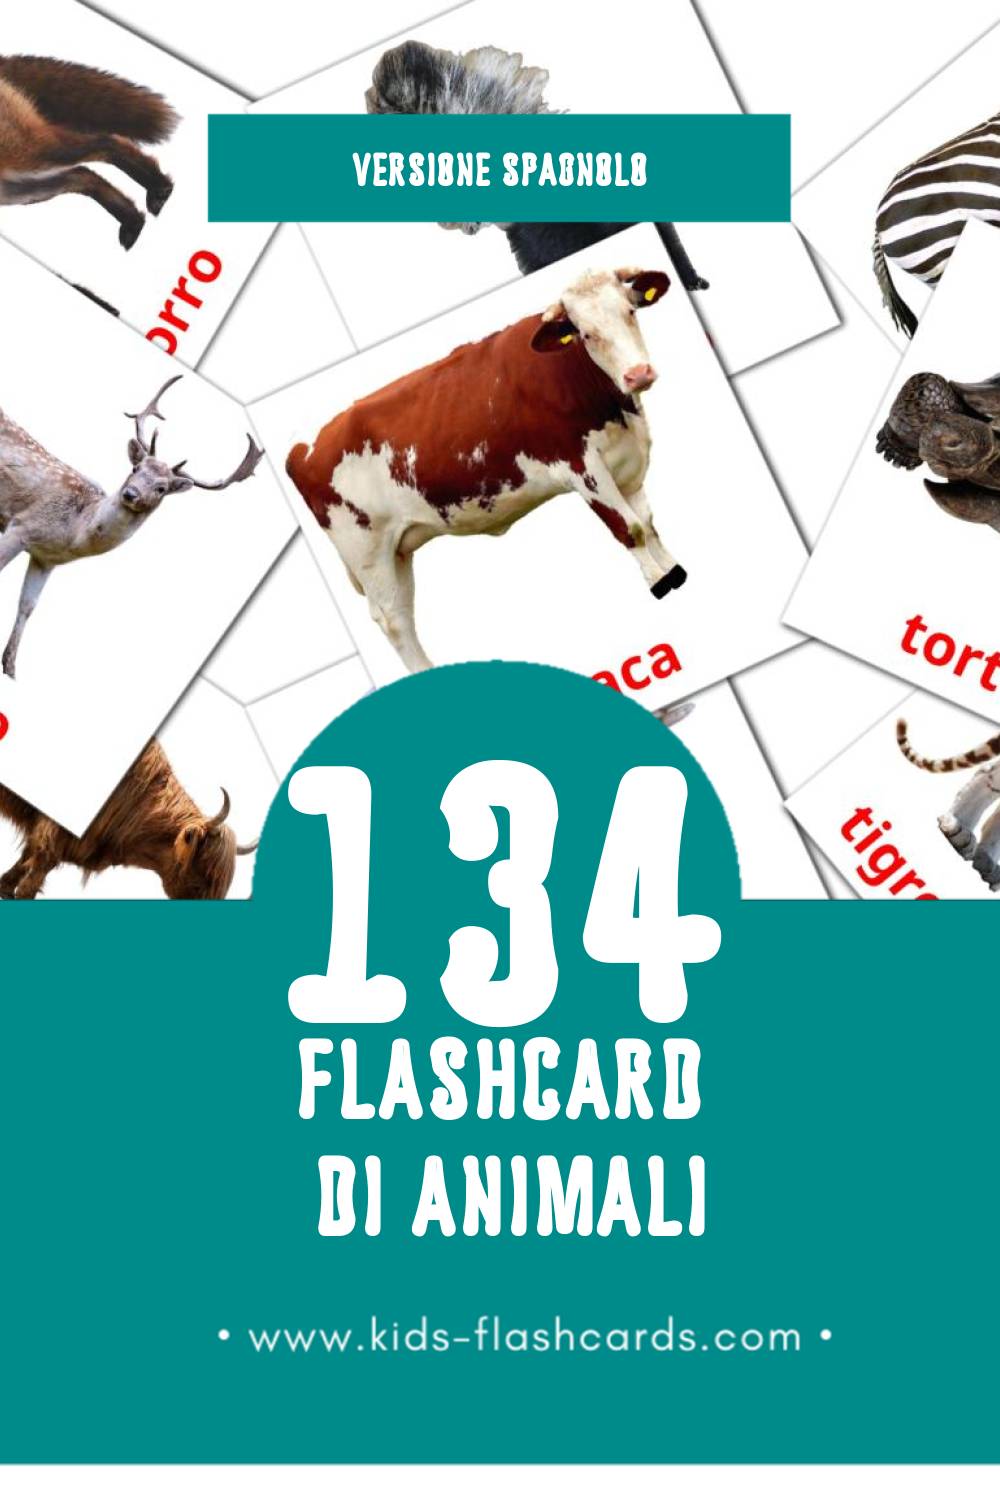 Schede visive sugli Animales per bambini (134 schede in Spagnolo)